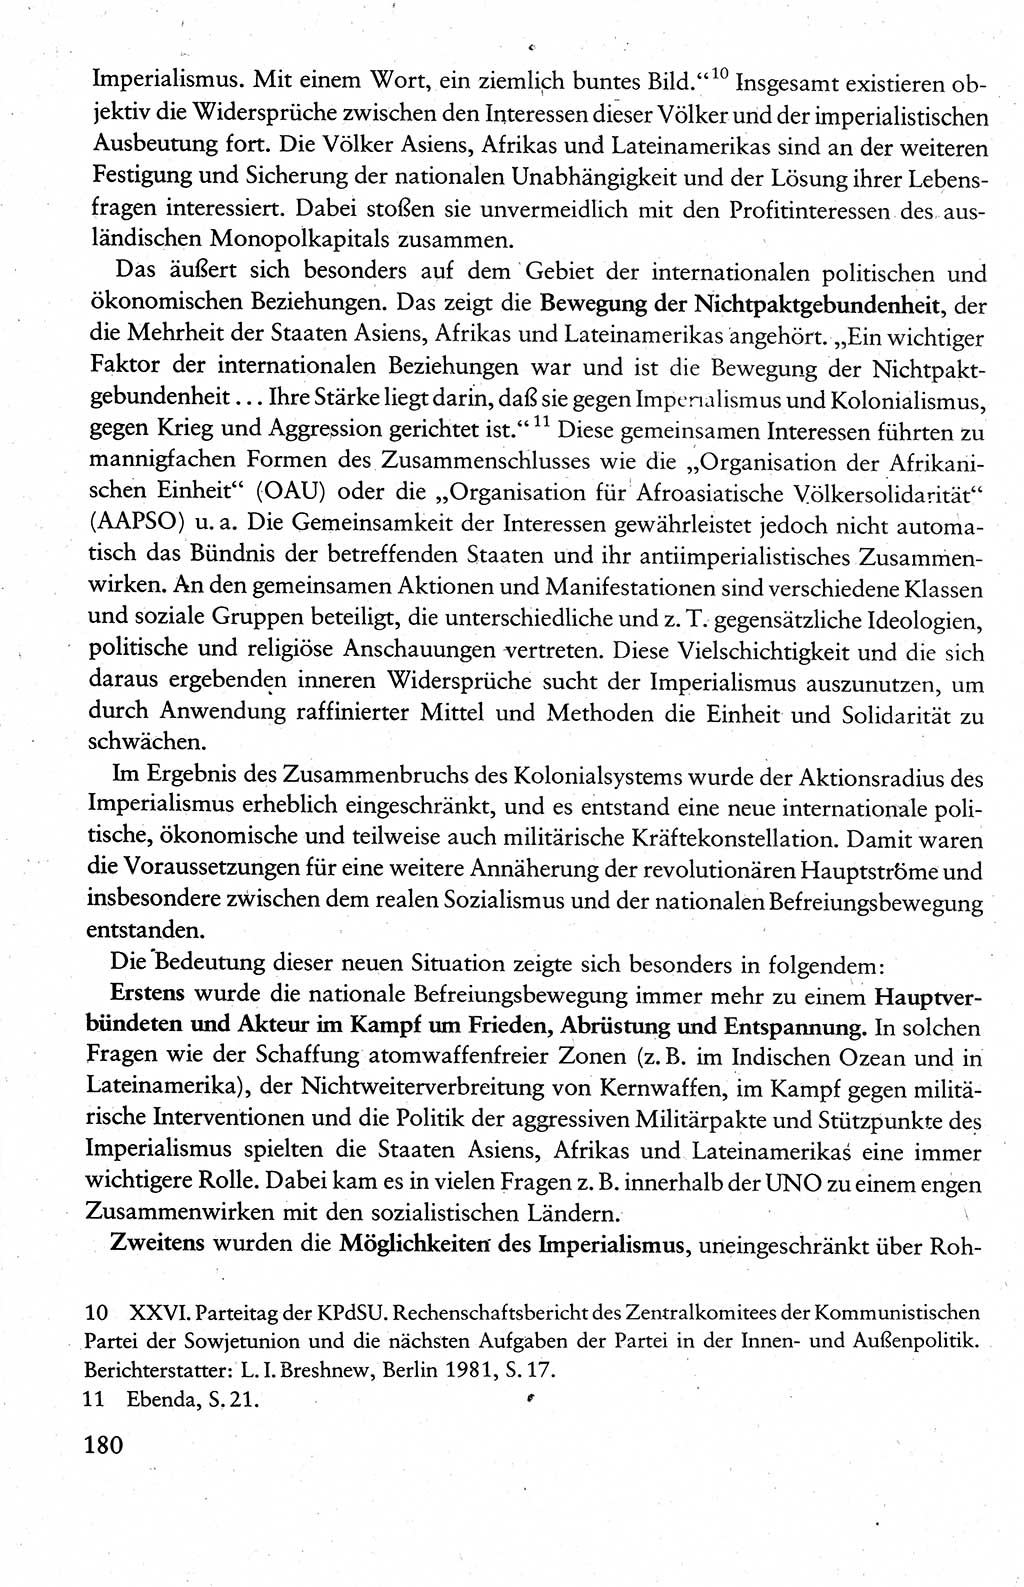 Wissenschaftlicher Kommunismus [Deutsche Demokratische Republik (DDR)], Lehrbuch für das marxistisch-leninistische Grundlagenstudium 1983, Seite 180 (Wiss. Komm. DDR Lb. 1983, S. 180)